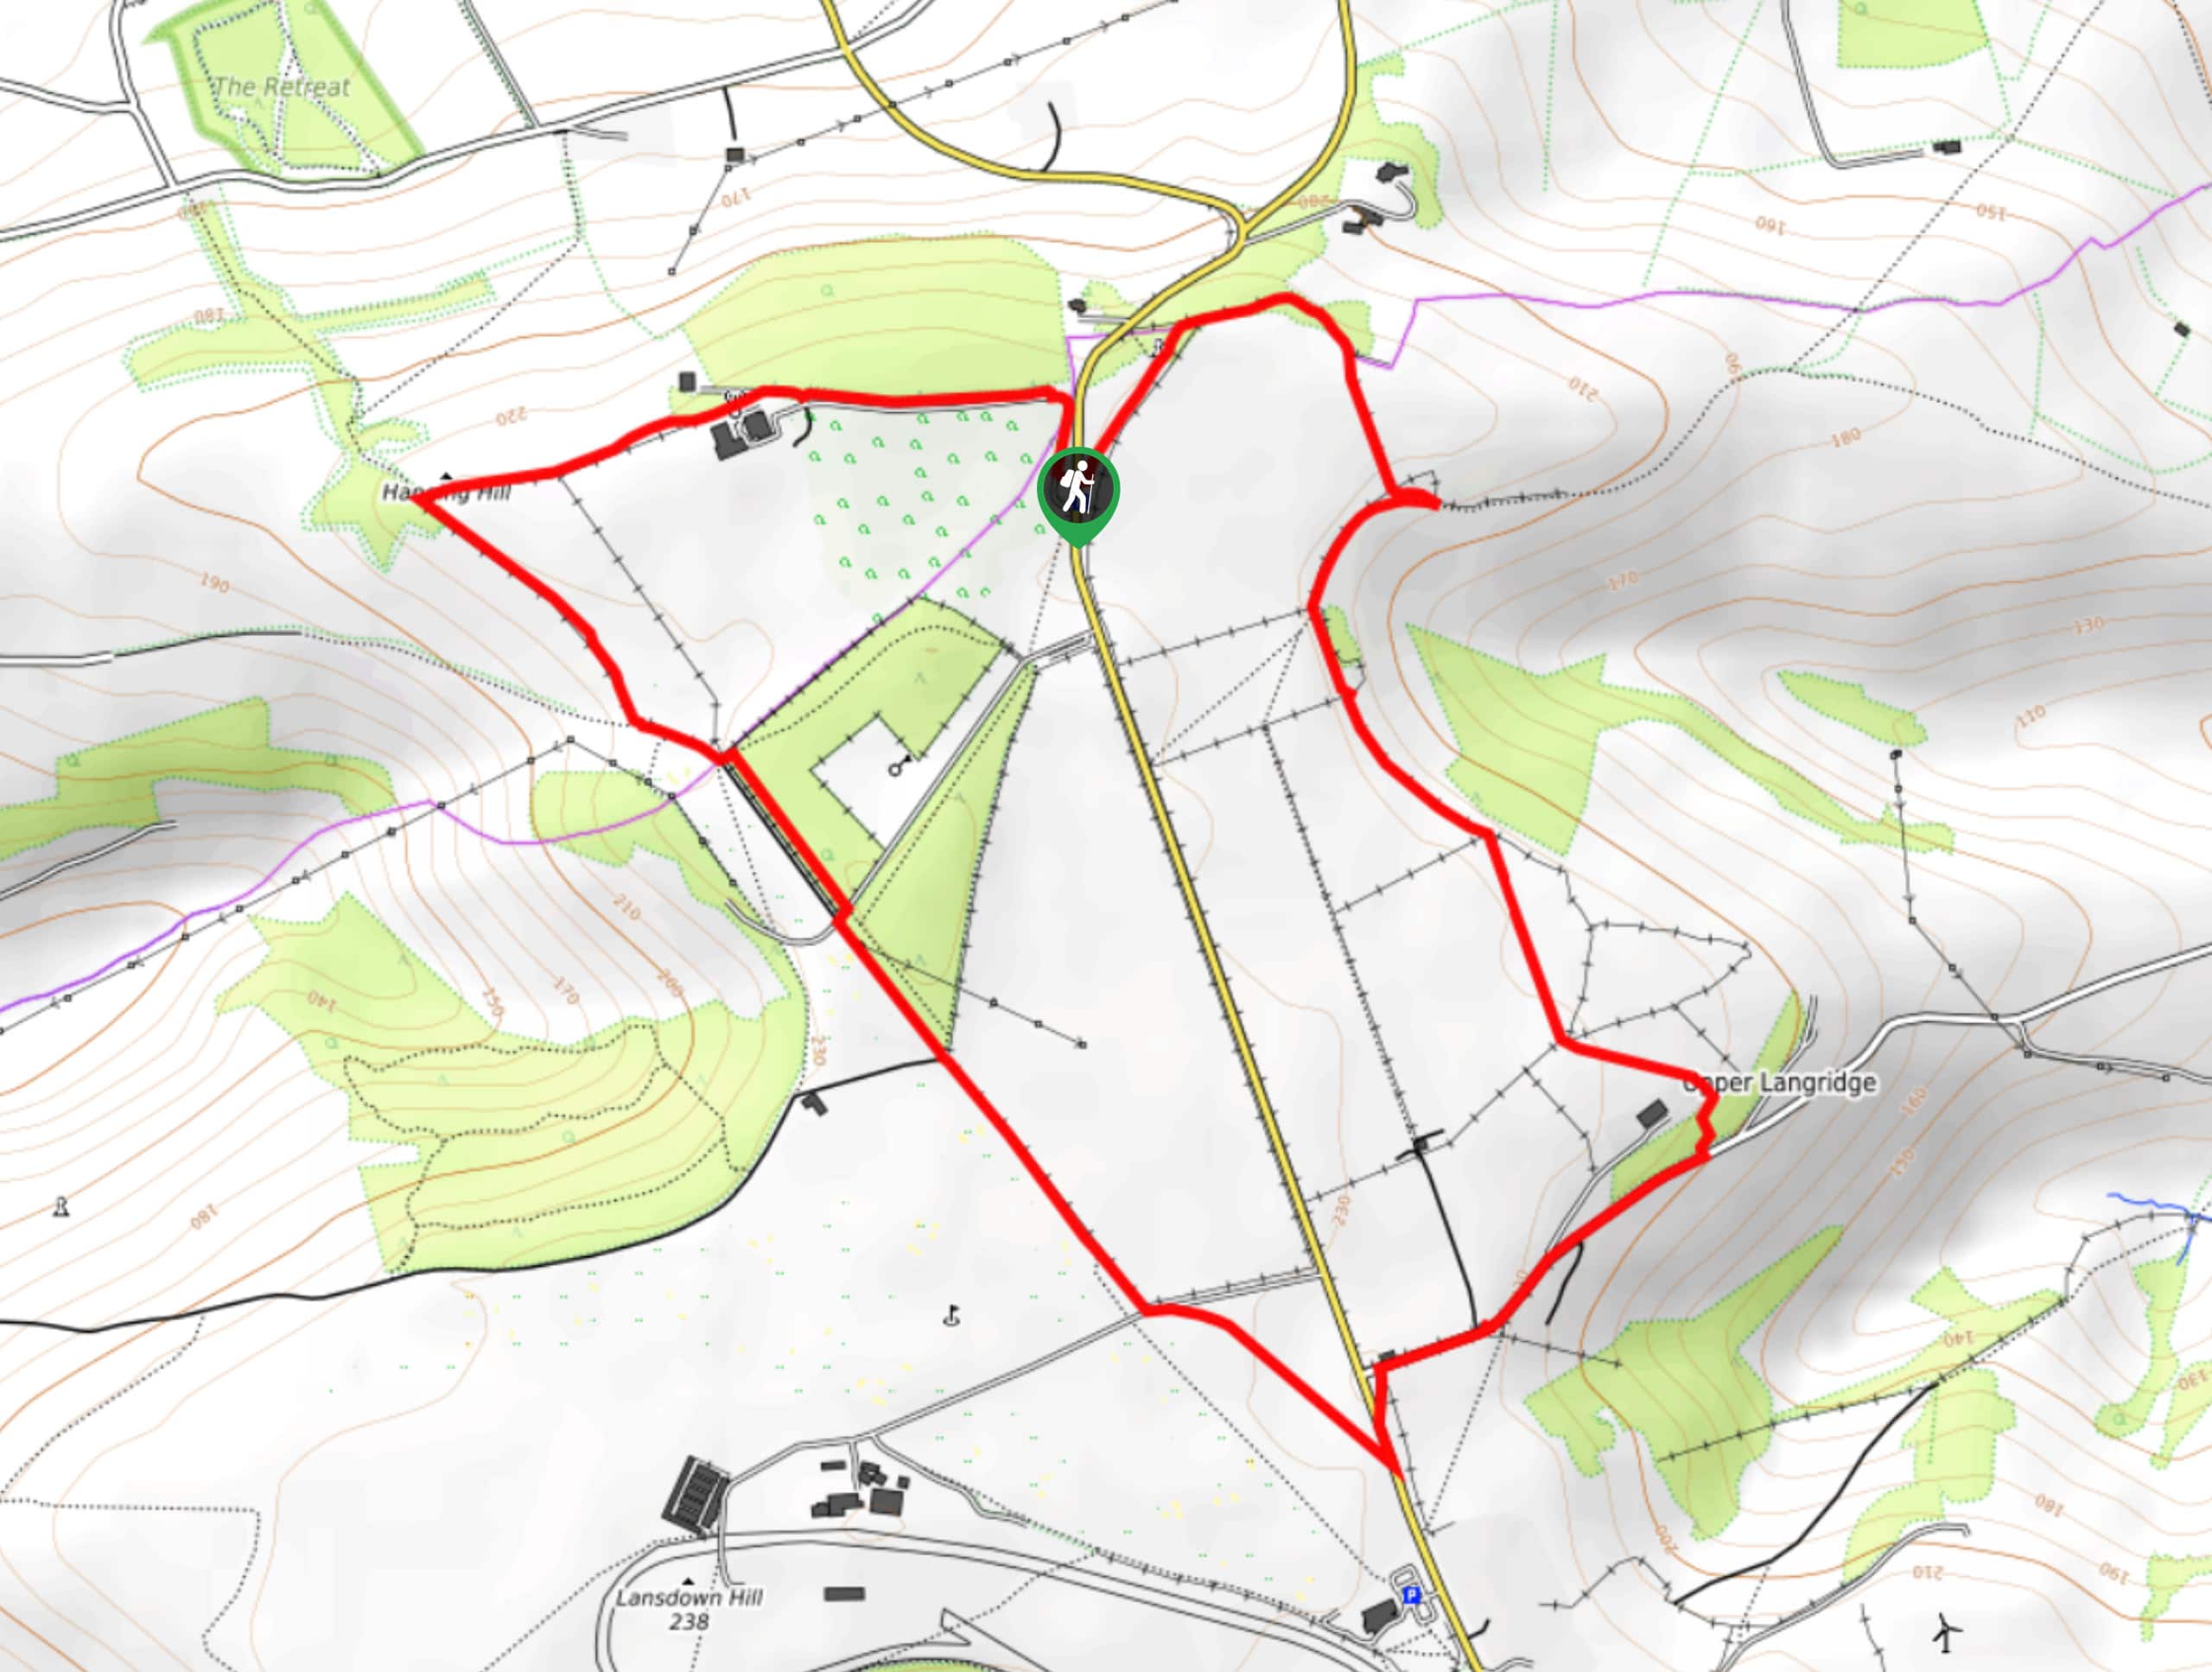 Upper Langridge Circular Walk Map